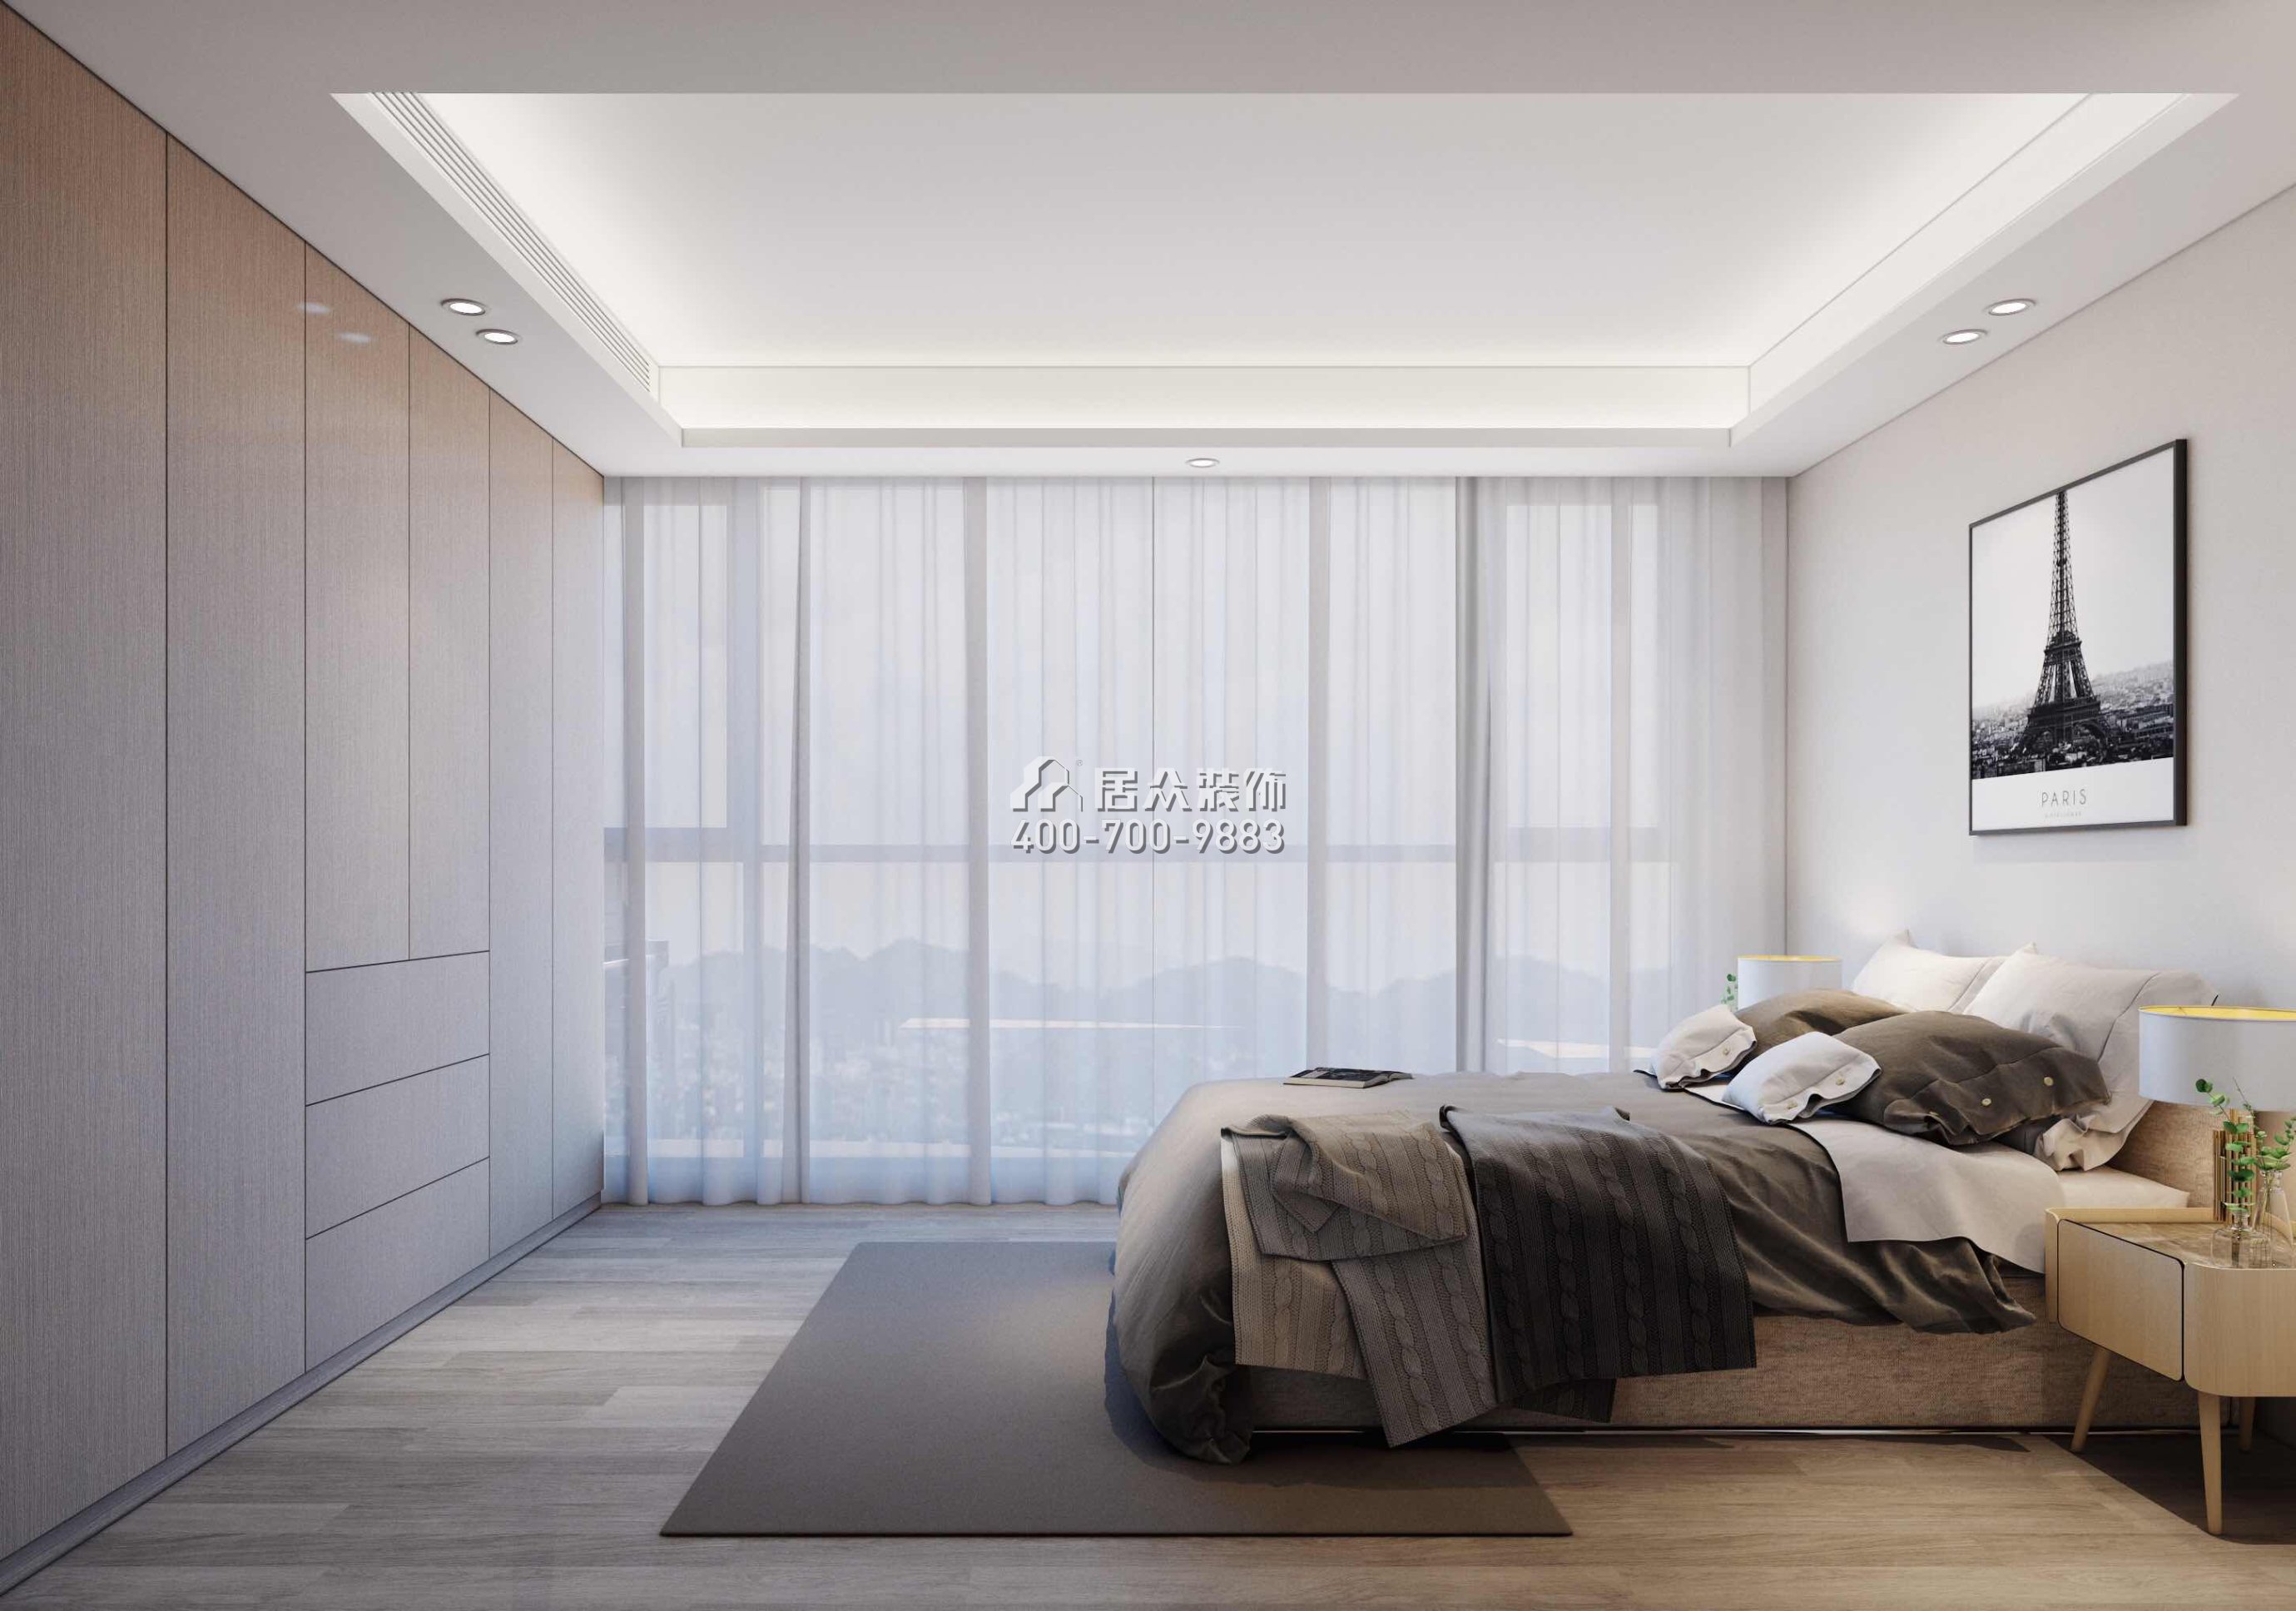 壹方中心180平方米現代簡約風格平層戶型臥室裝修效果圖